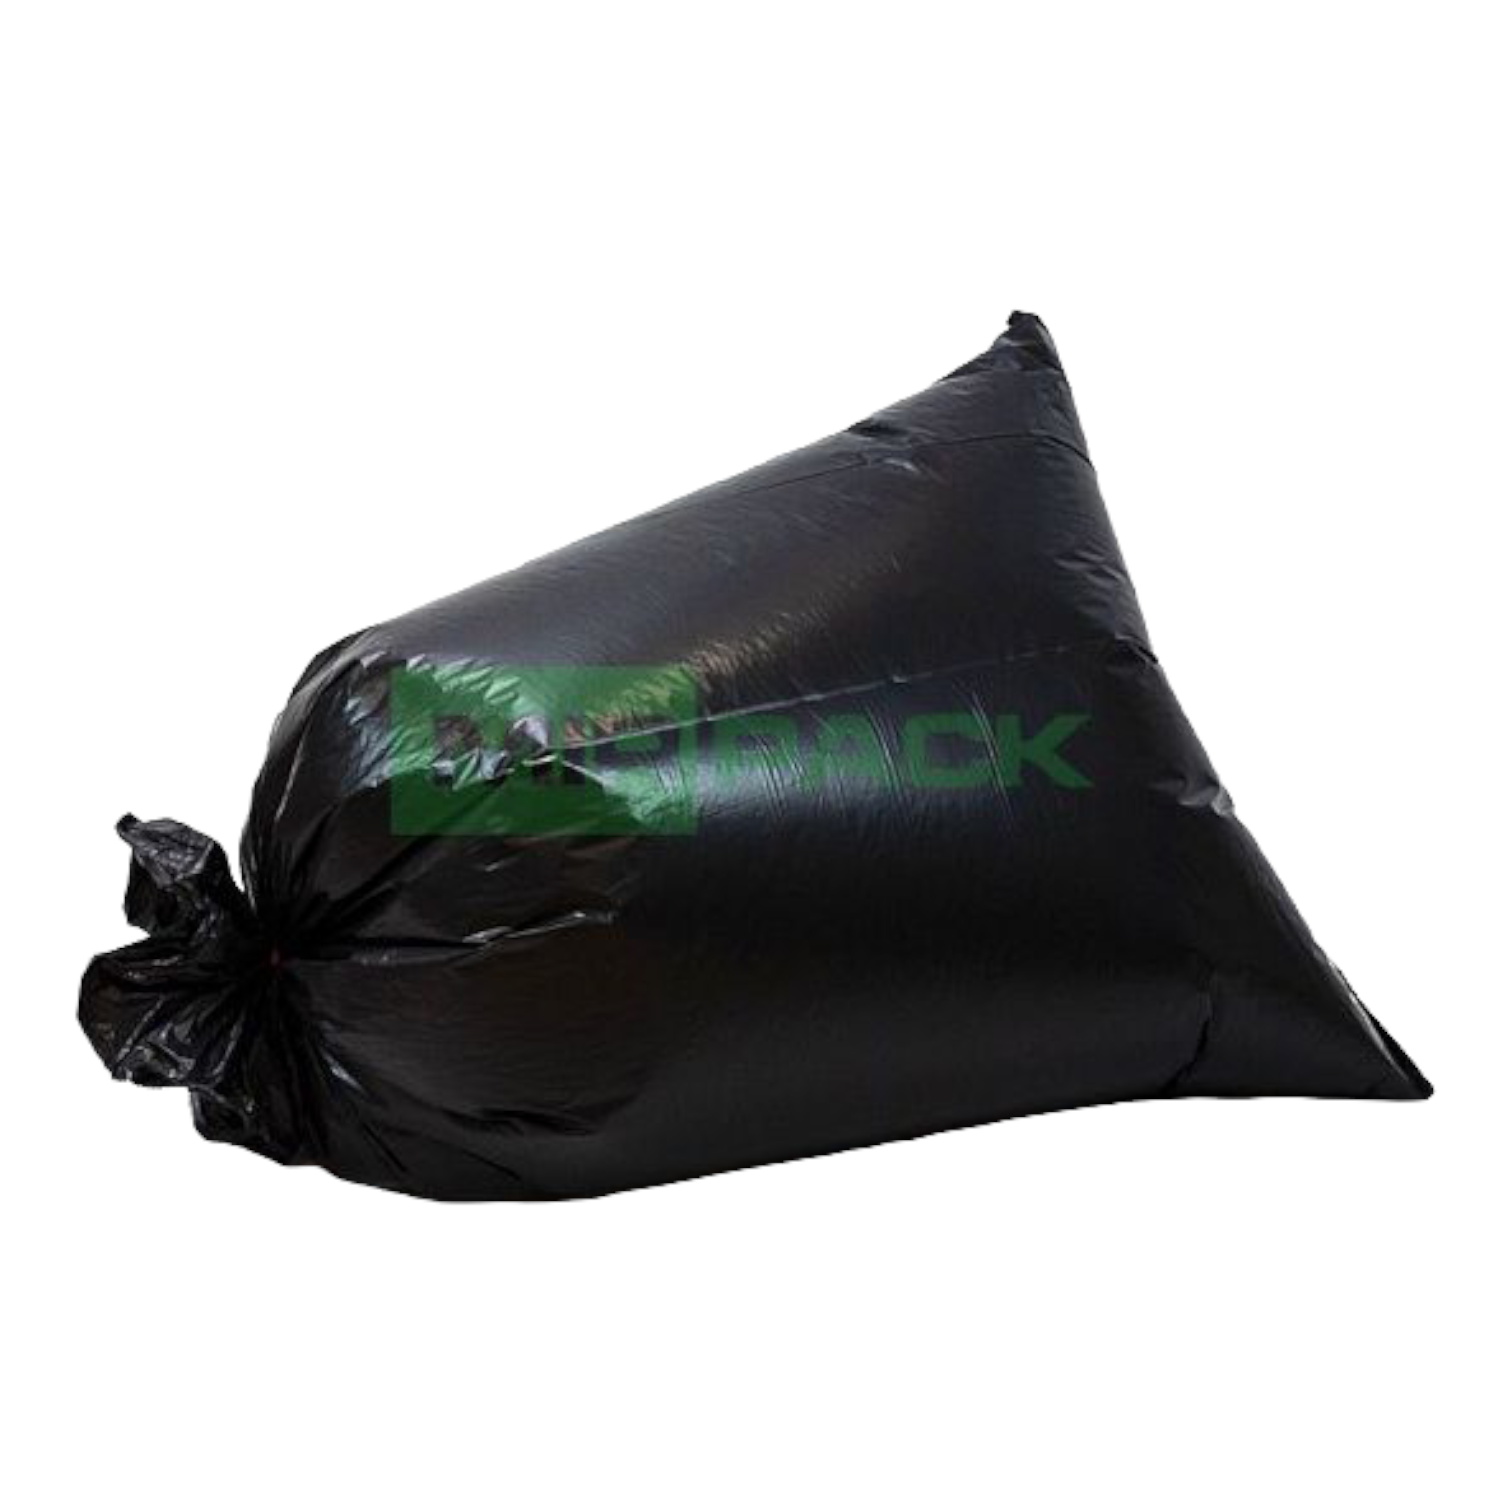 Мешки для мусора МешокRU 60 литров 60х70 см черные в рулоне - фото 13